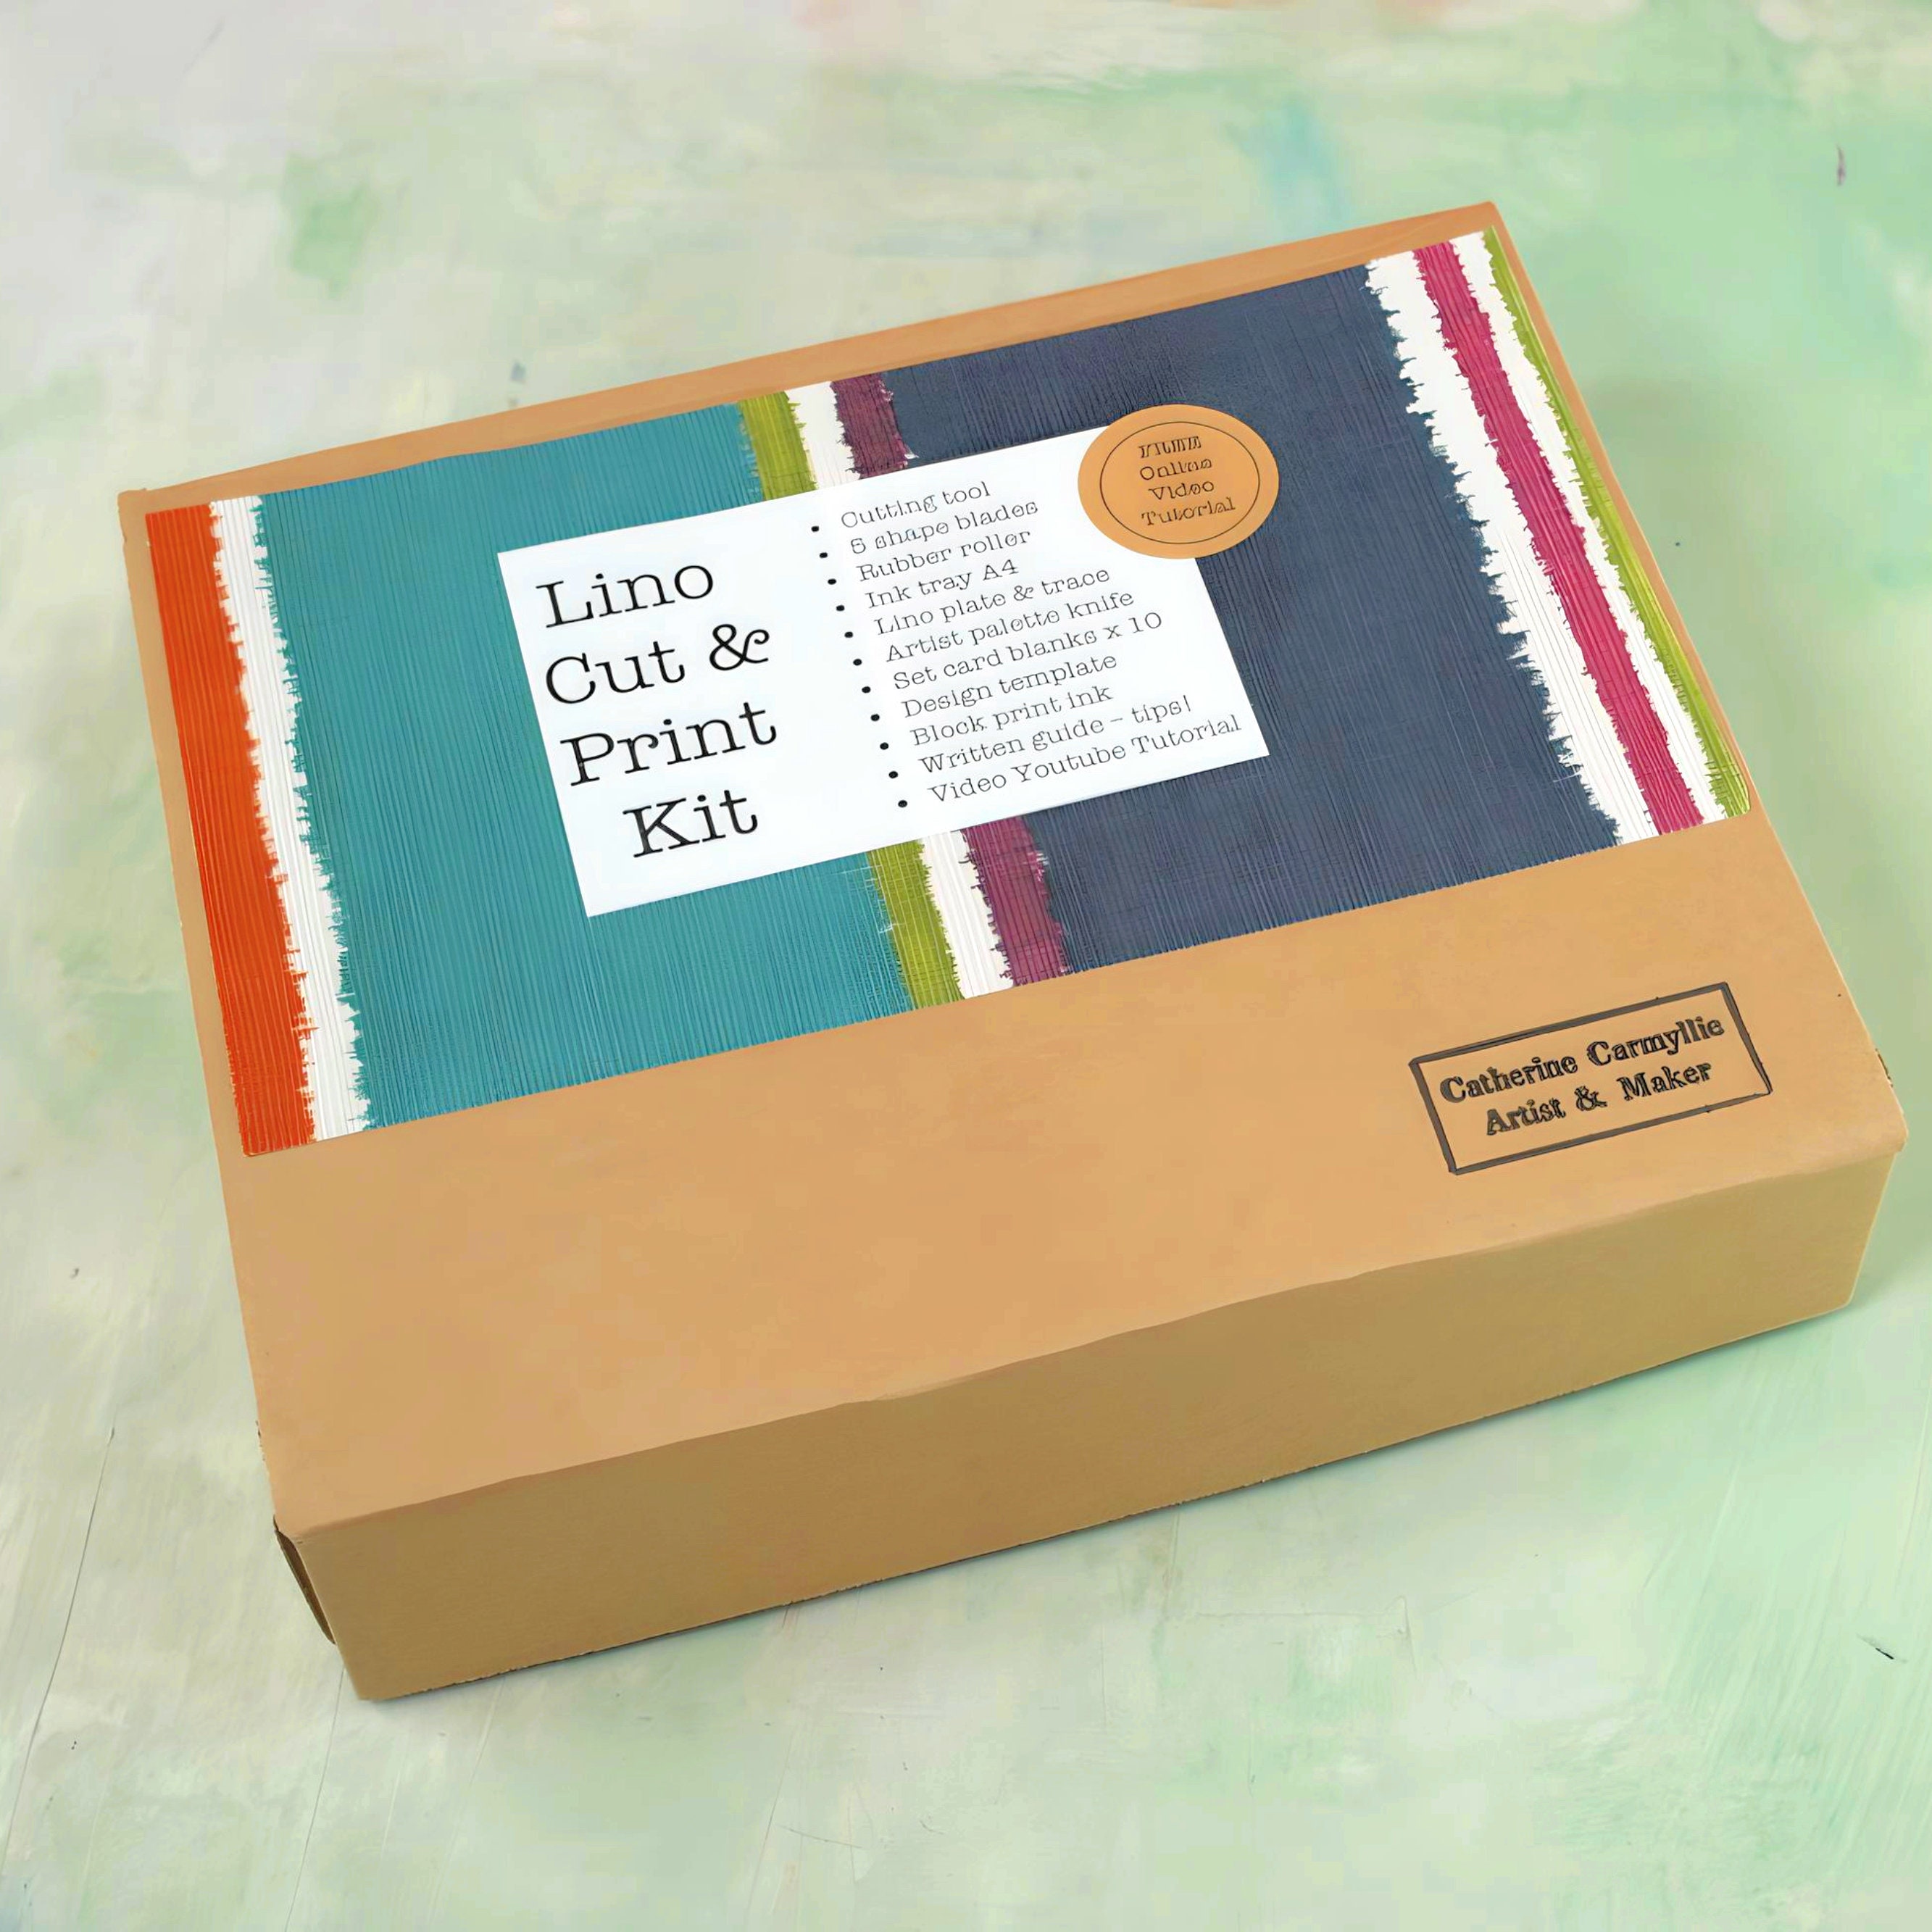 Rubber Stamp Making Kit with Stamp Blocks and Tools - Printmaking Kit –  usawholesalesupplycc